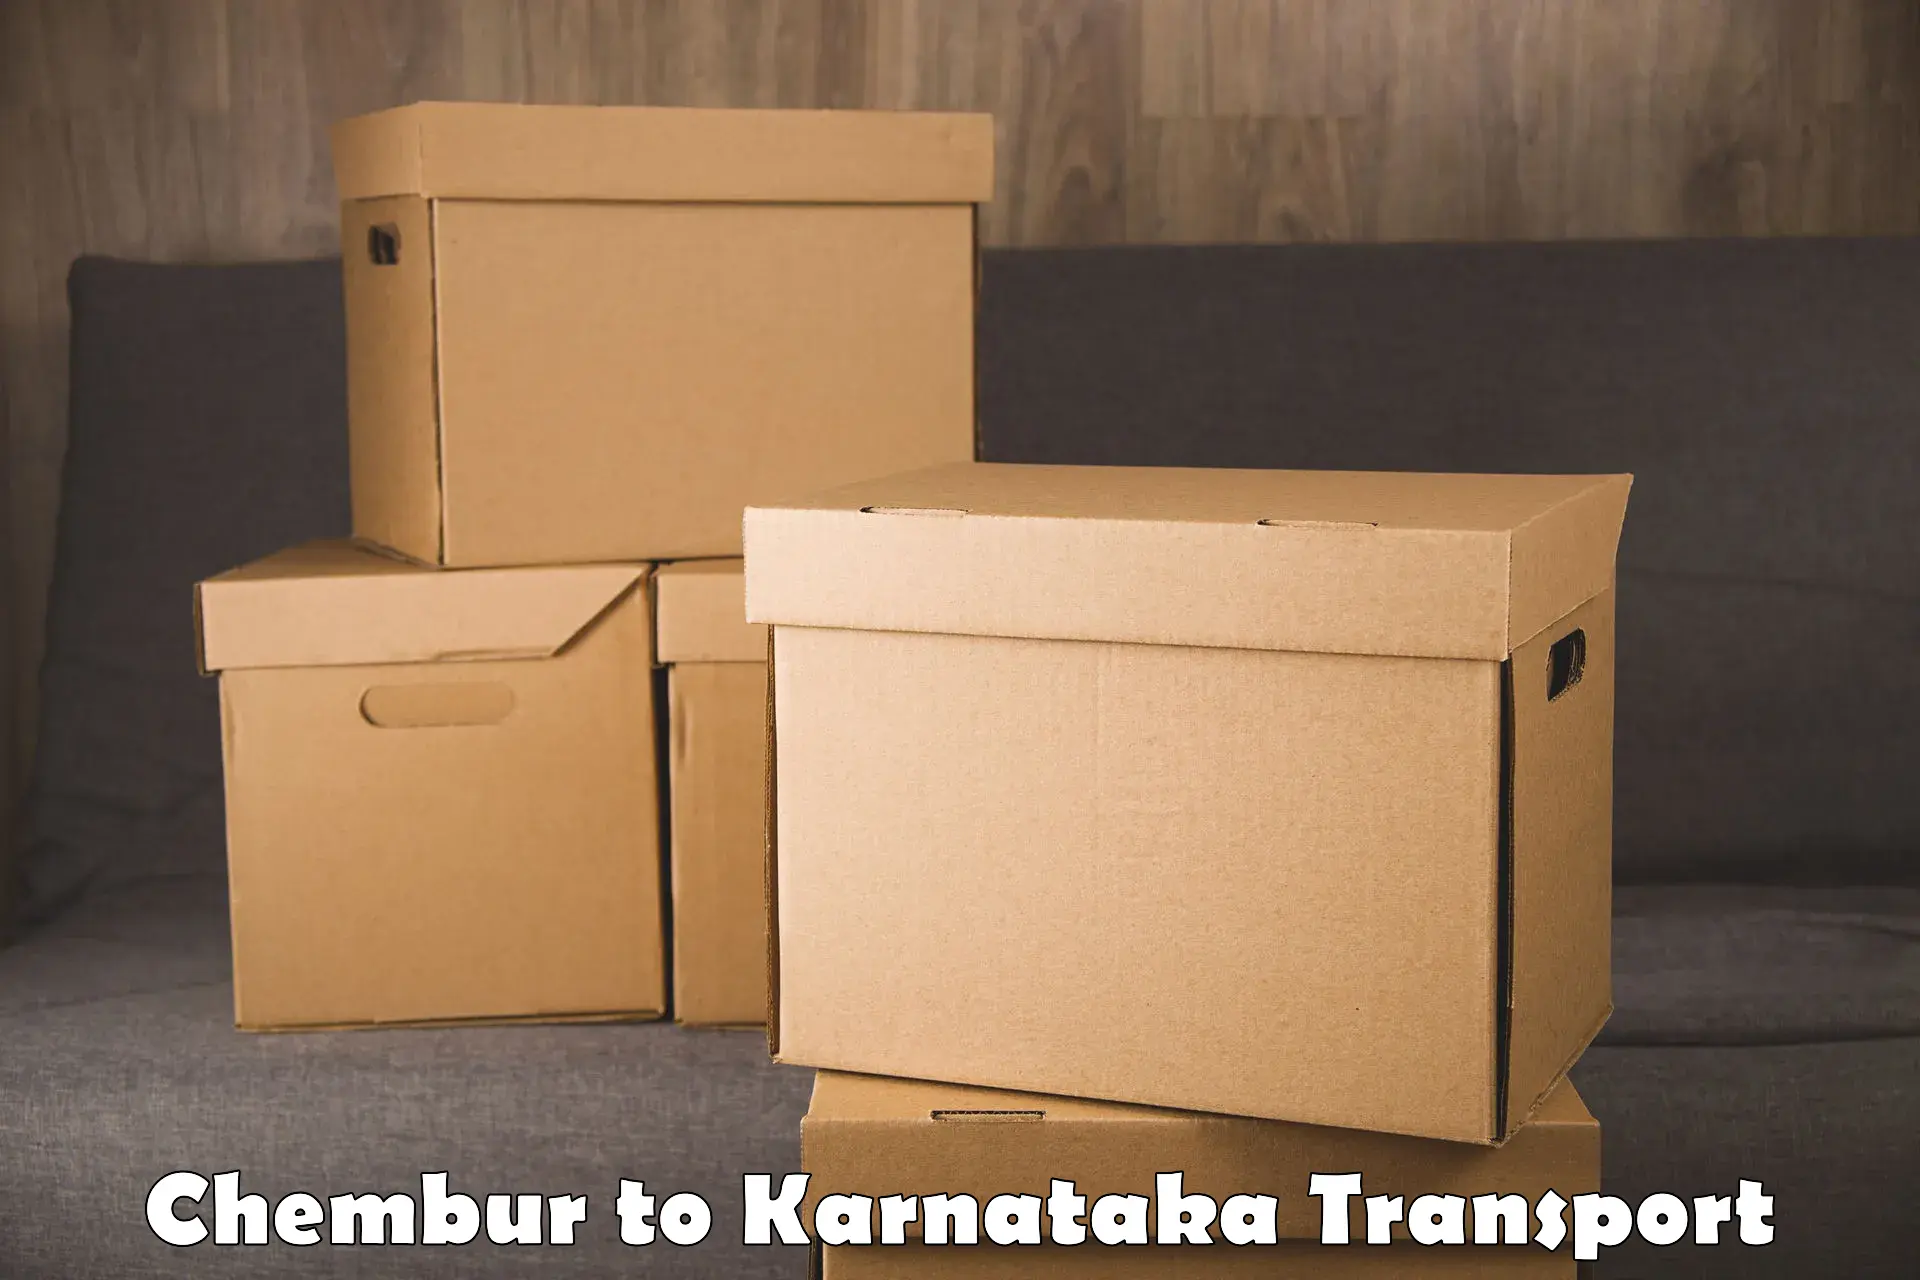 Bike shipping service Chembur to Yenepoya Mangalore